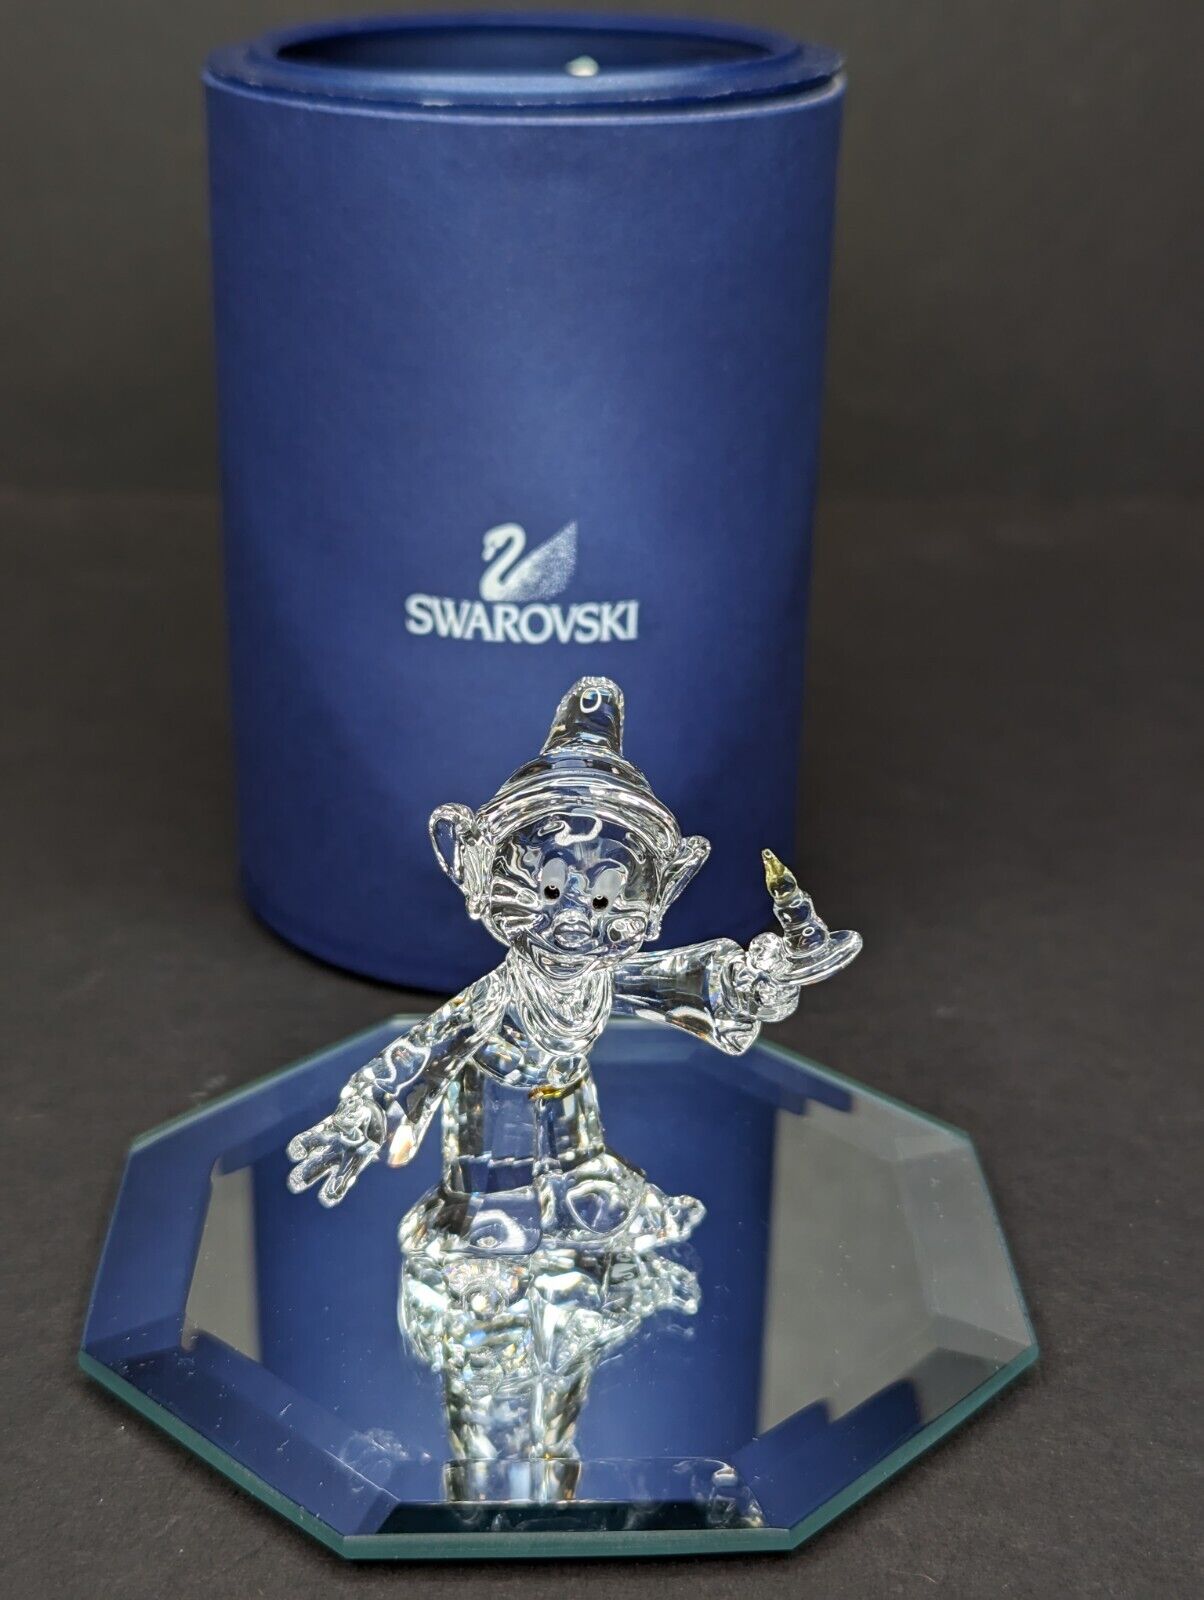 Swarovski Figurine Disney Dopey Dwarf from Snow White 997212 w/Box 0997212